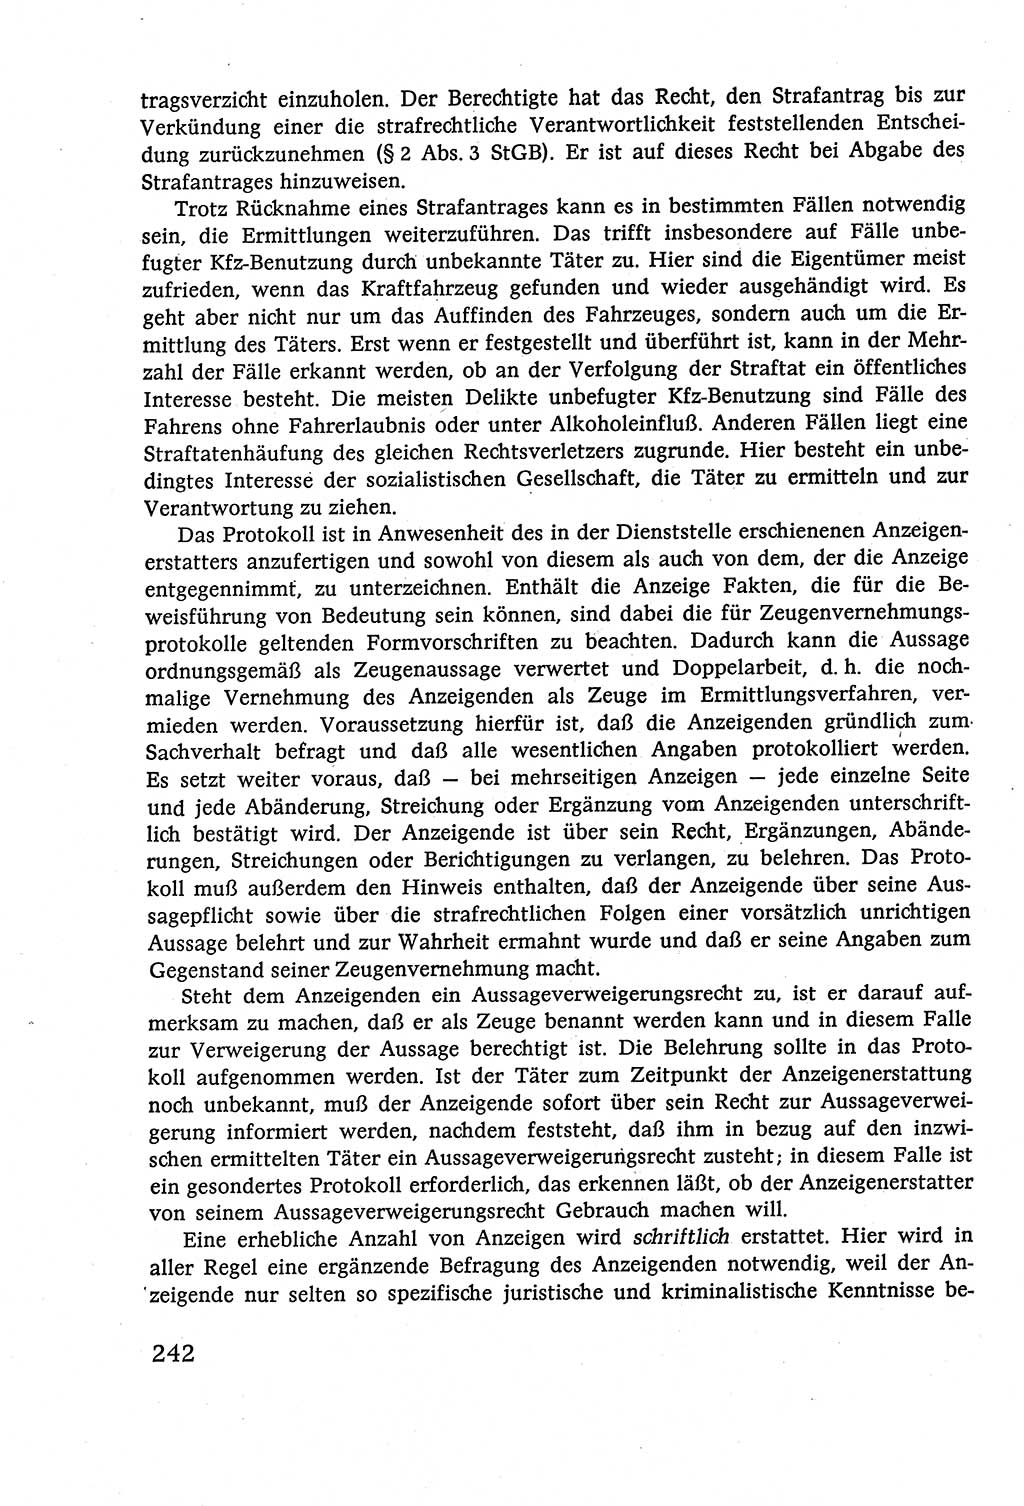 Strafverfahrensrecht [Deutsche Demokratische Republik (DDR)], Lehrbuch 1977, Seite 242 (Strafverf.-R. DDR Lb. 1977, S. 242)